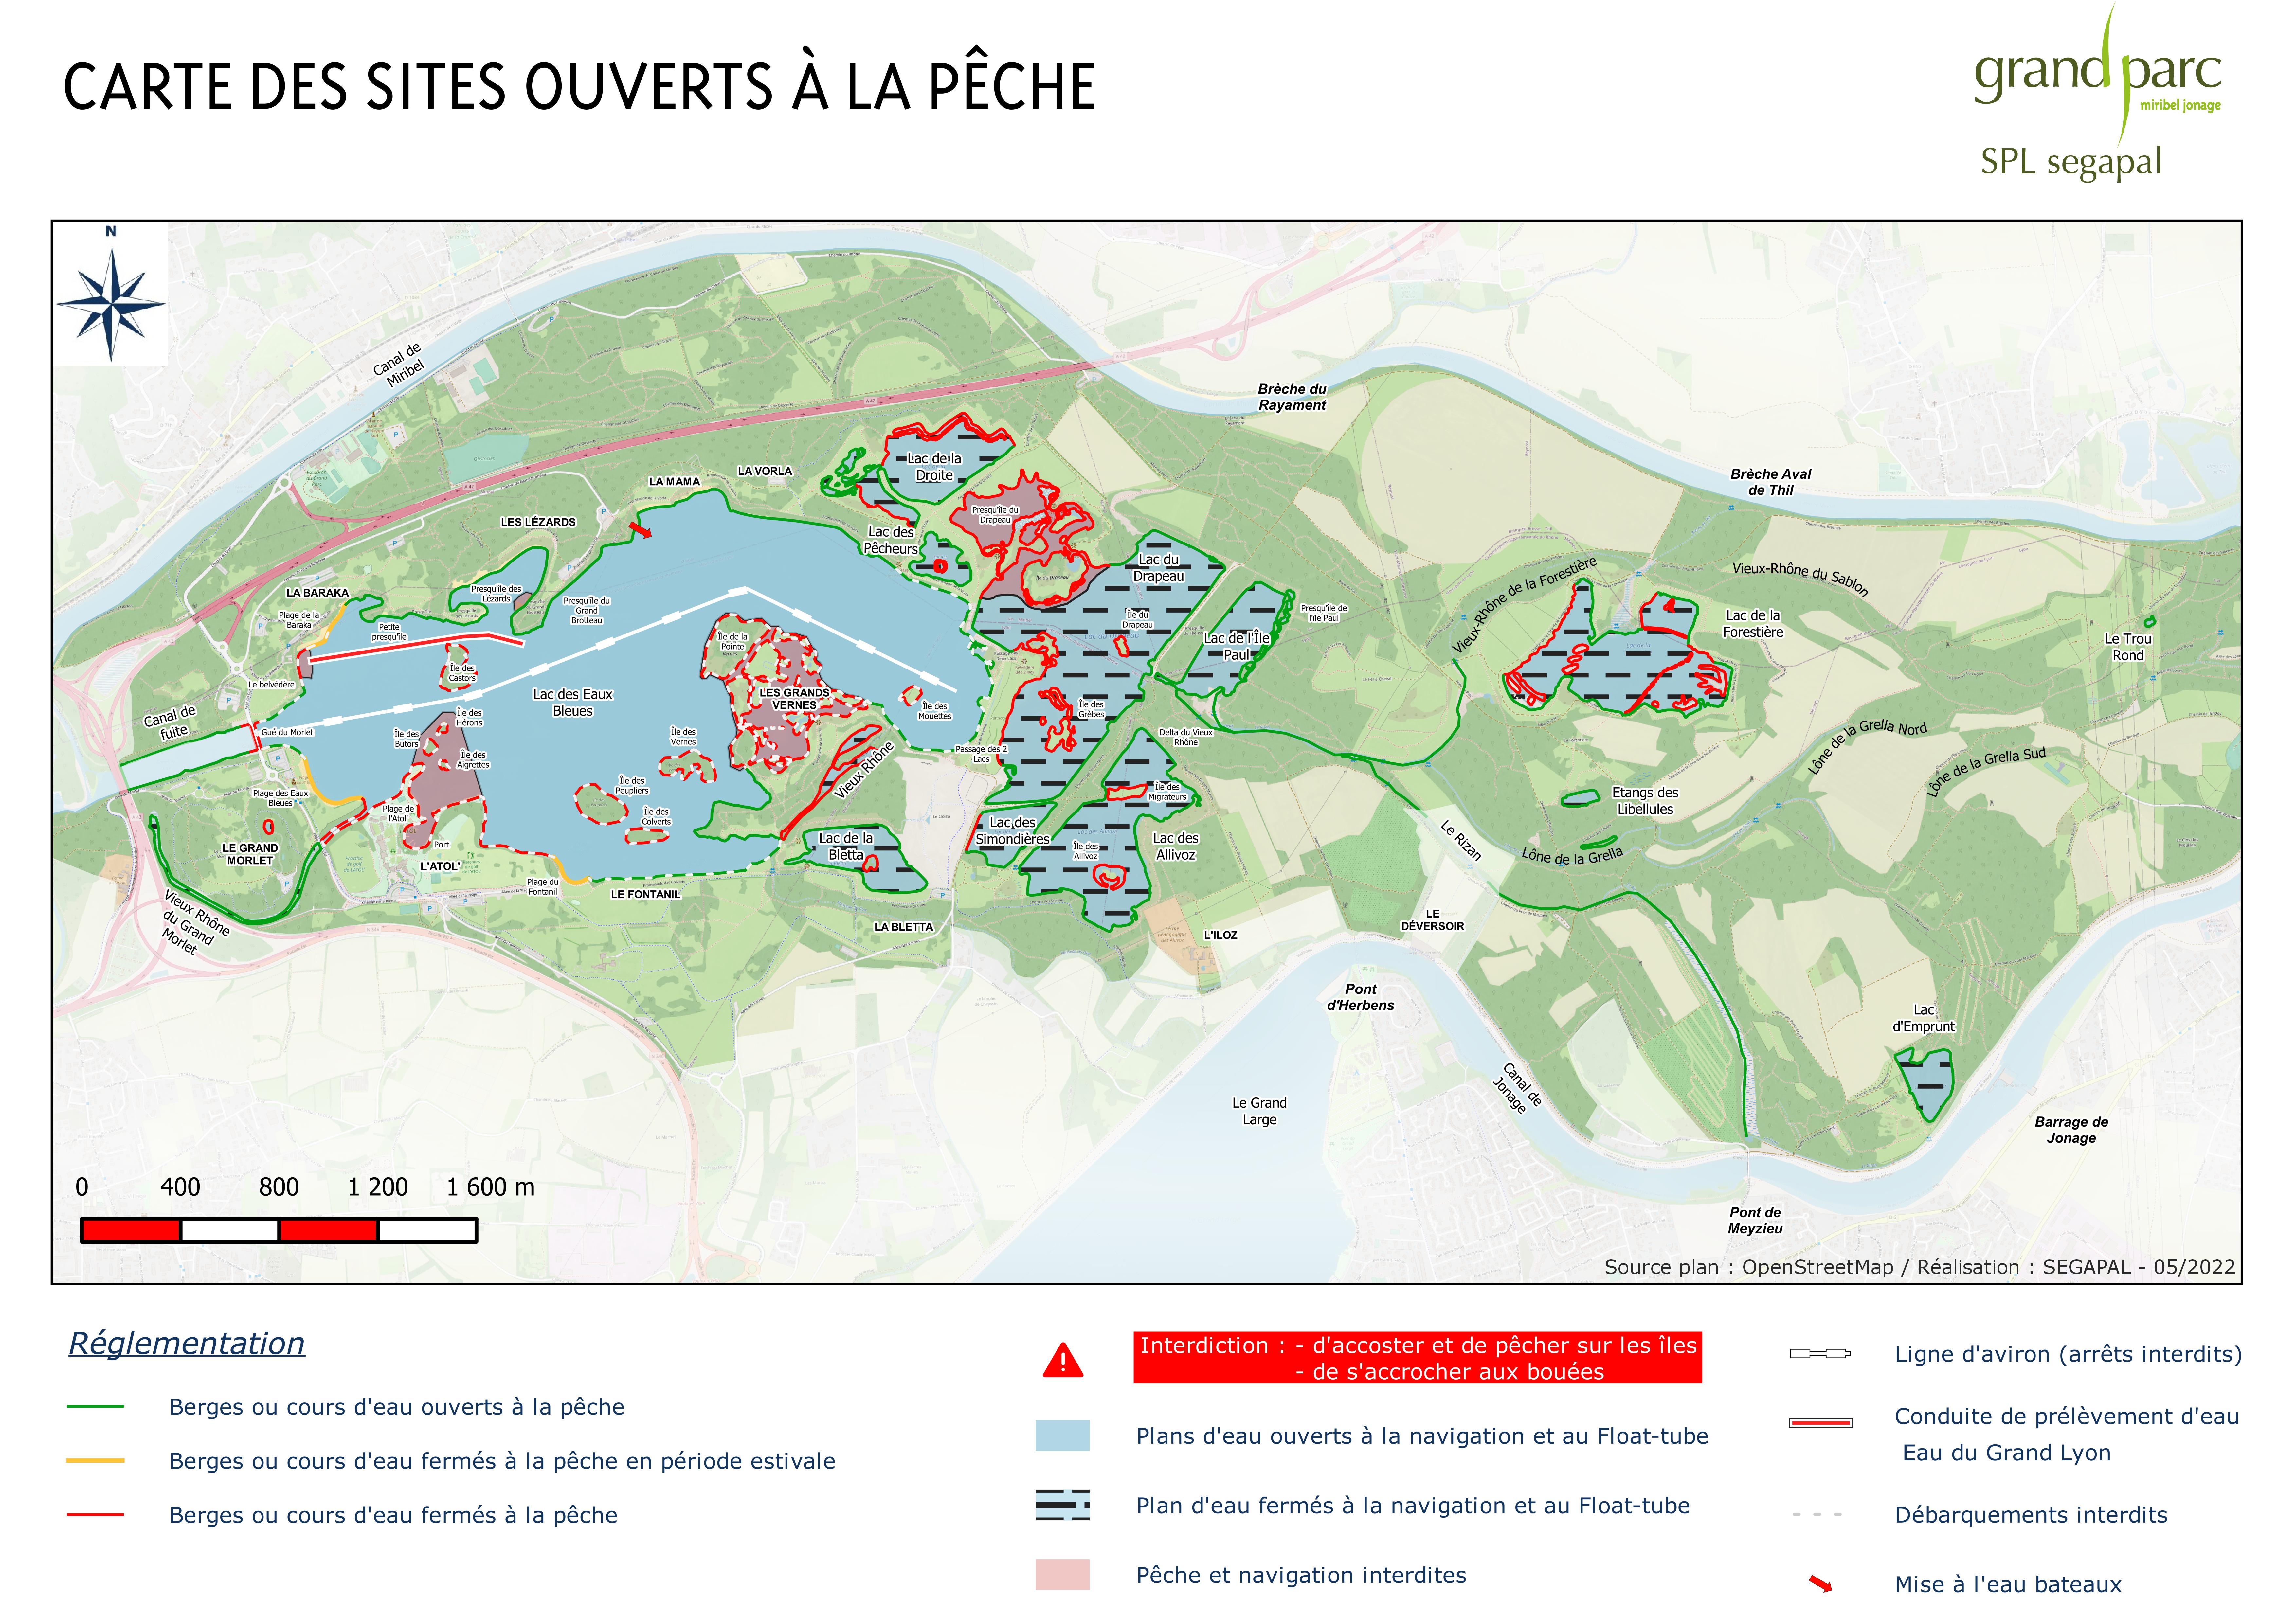 Carte des sites ouverts à la pêche (Lacs et cours d'eau du Grand Parc Miribel Jonage)